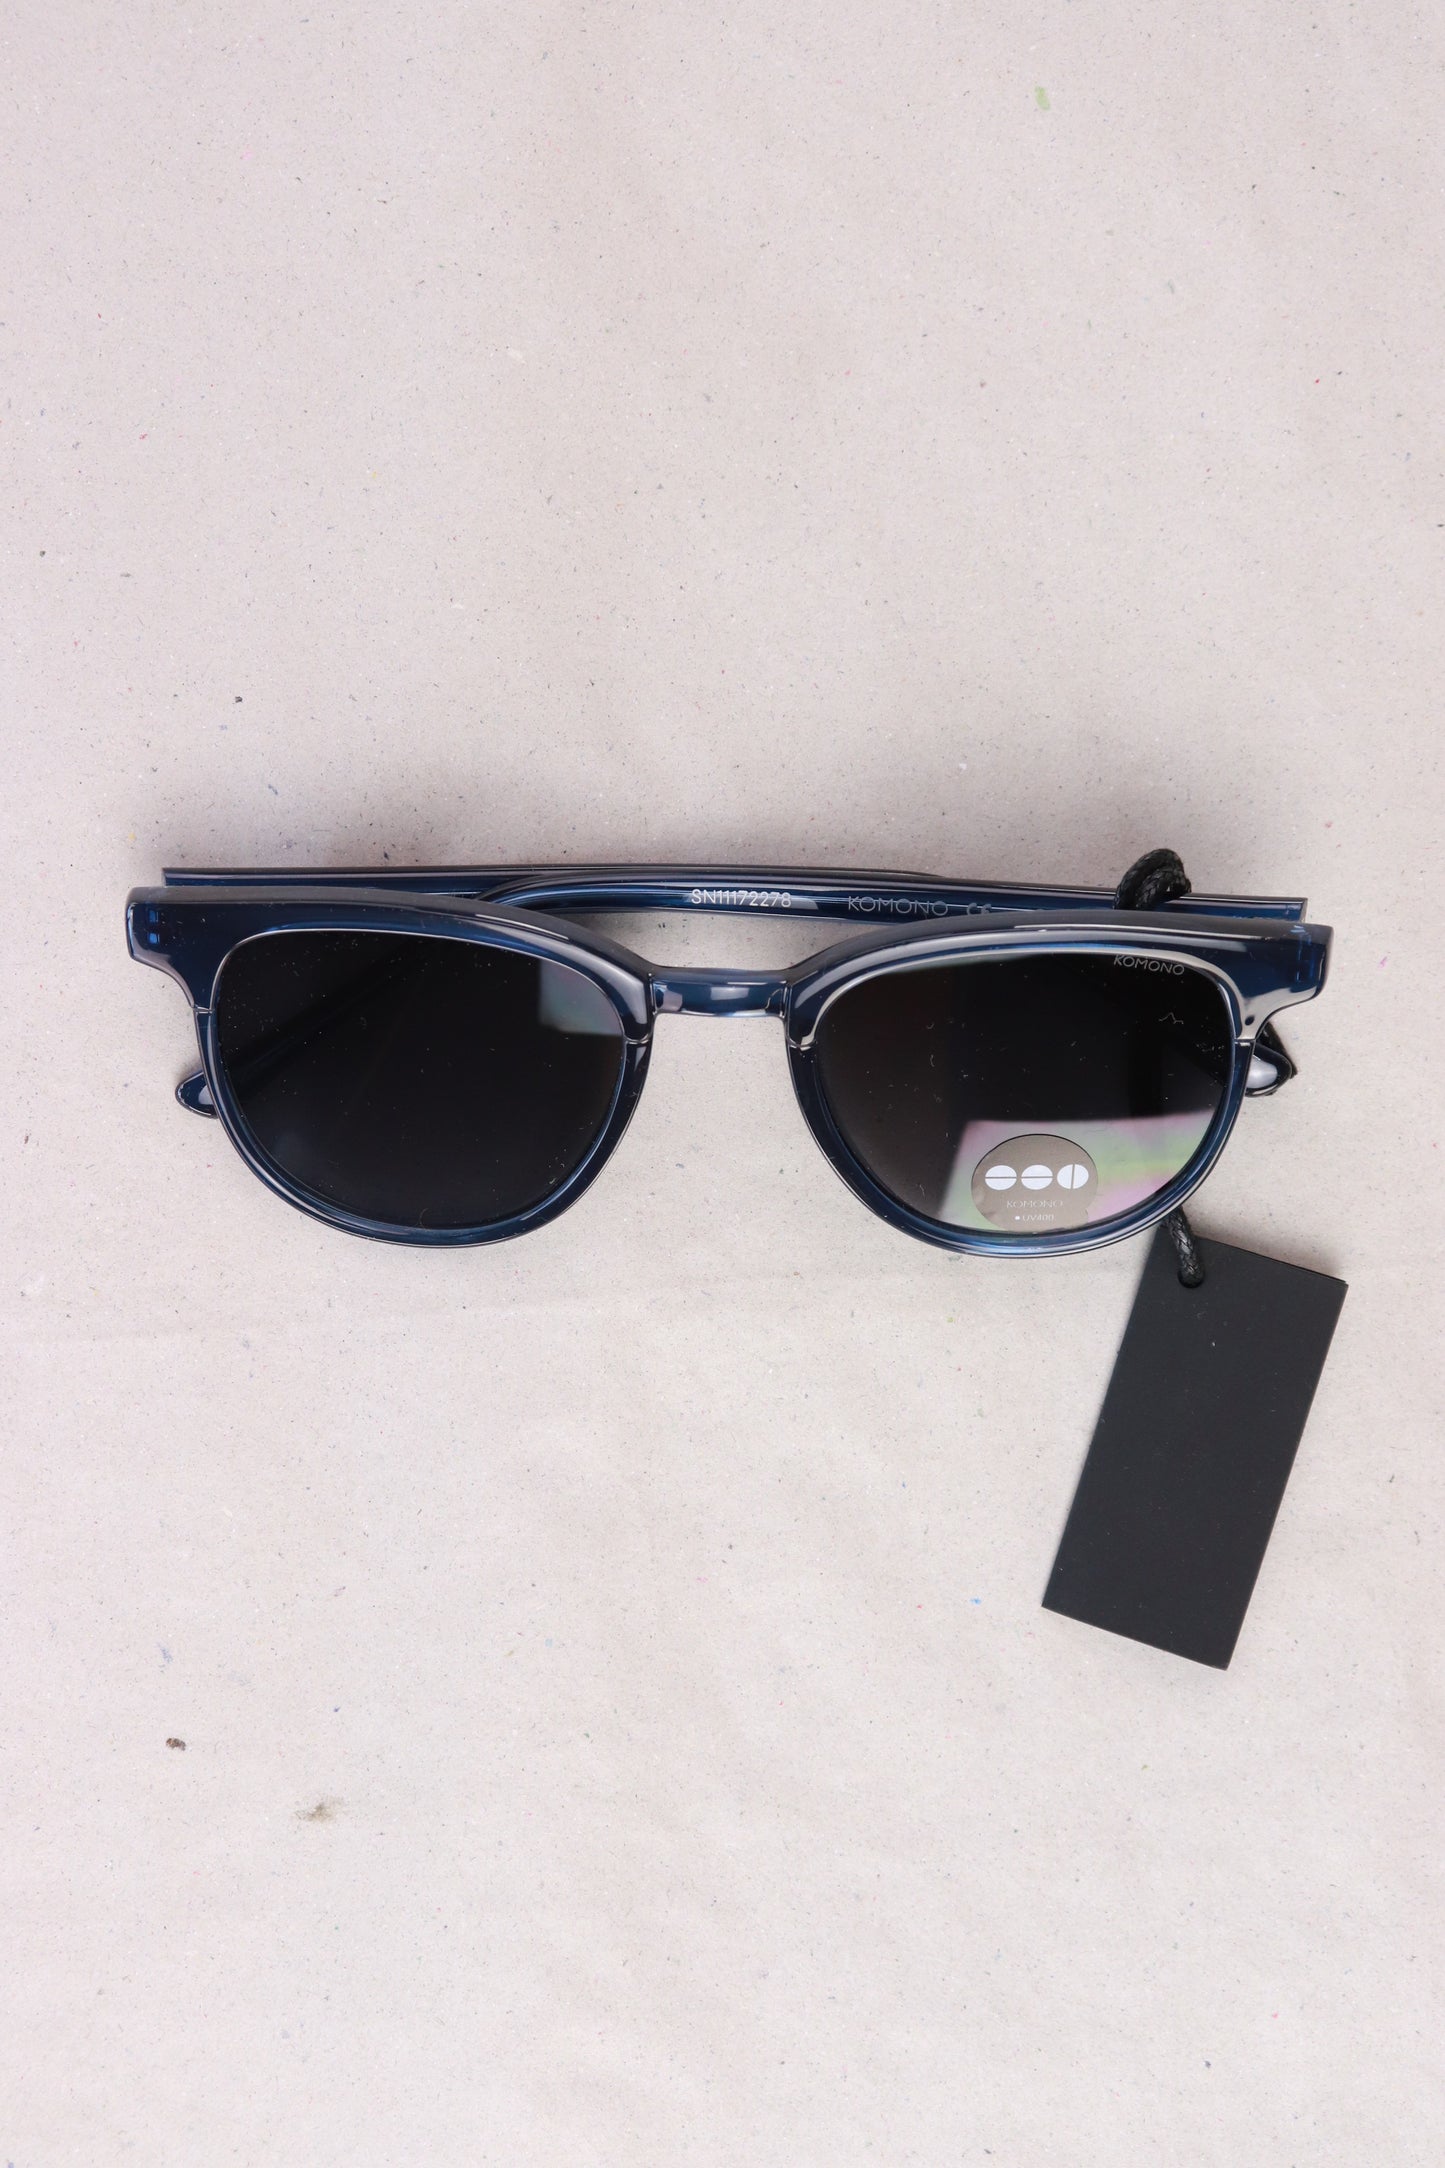 Komono Kinder Sonnenbrille Modell The Francis UV400 blau Größe Onesize neu mit Etikett